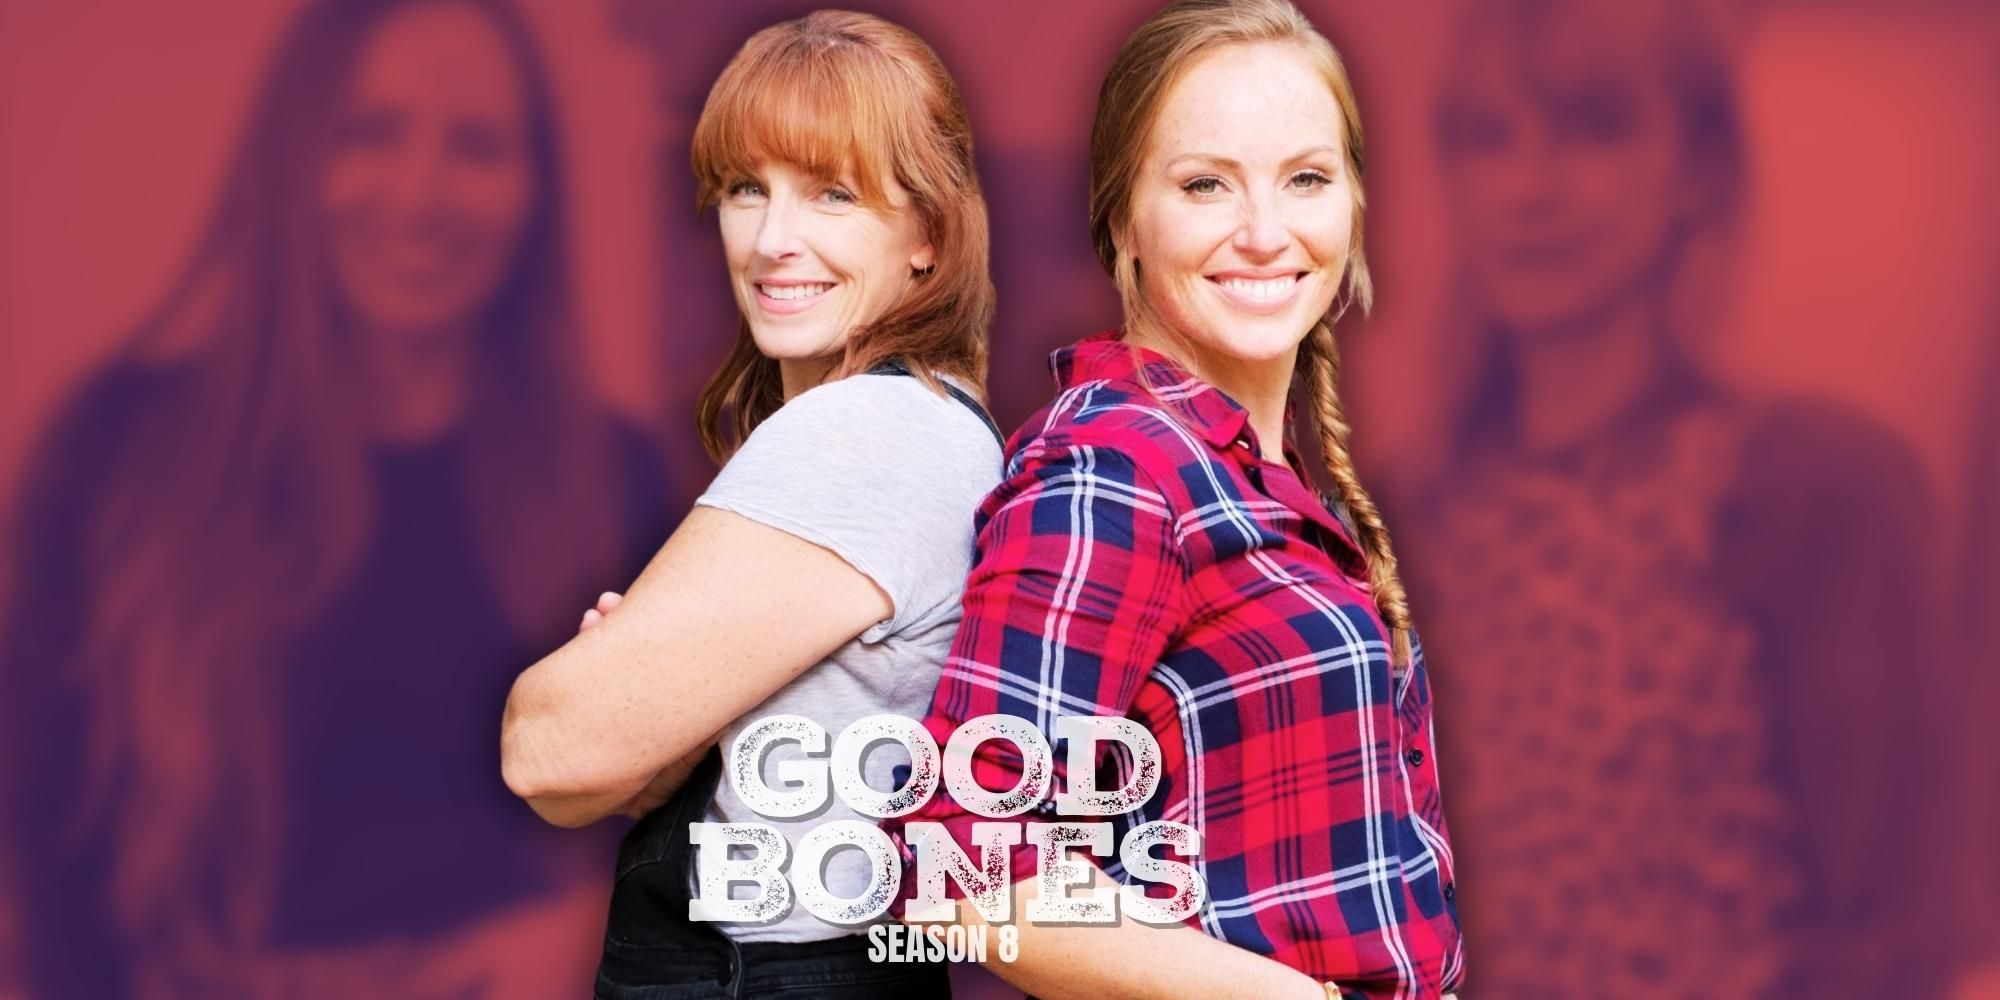 Temporada 8 de Good Bones: fecha de lanzamiento, reparto y todo lo que sabemos